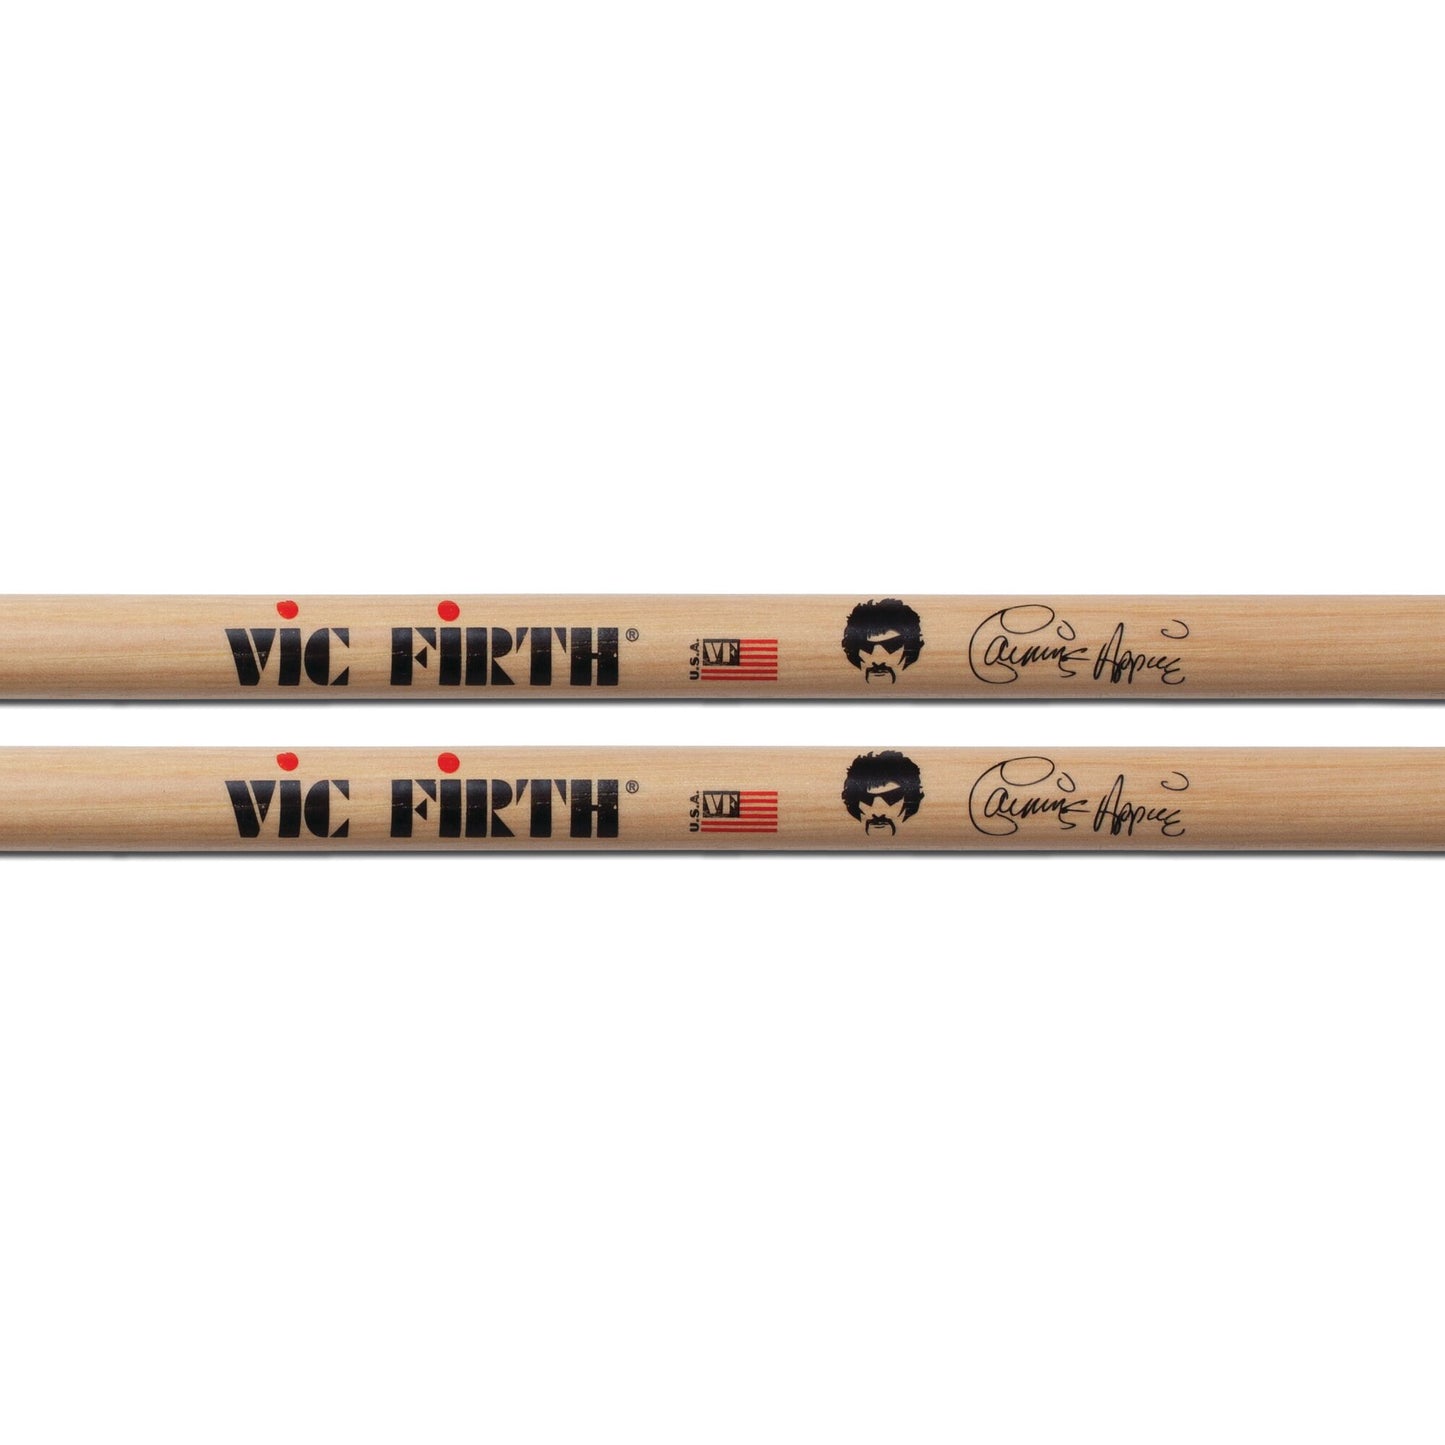 Signature Series -- Carmine Appice Drumsticks